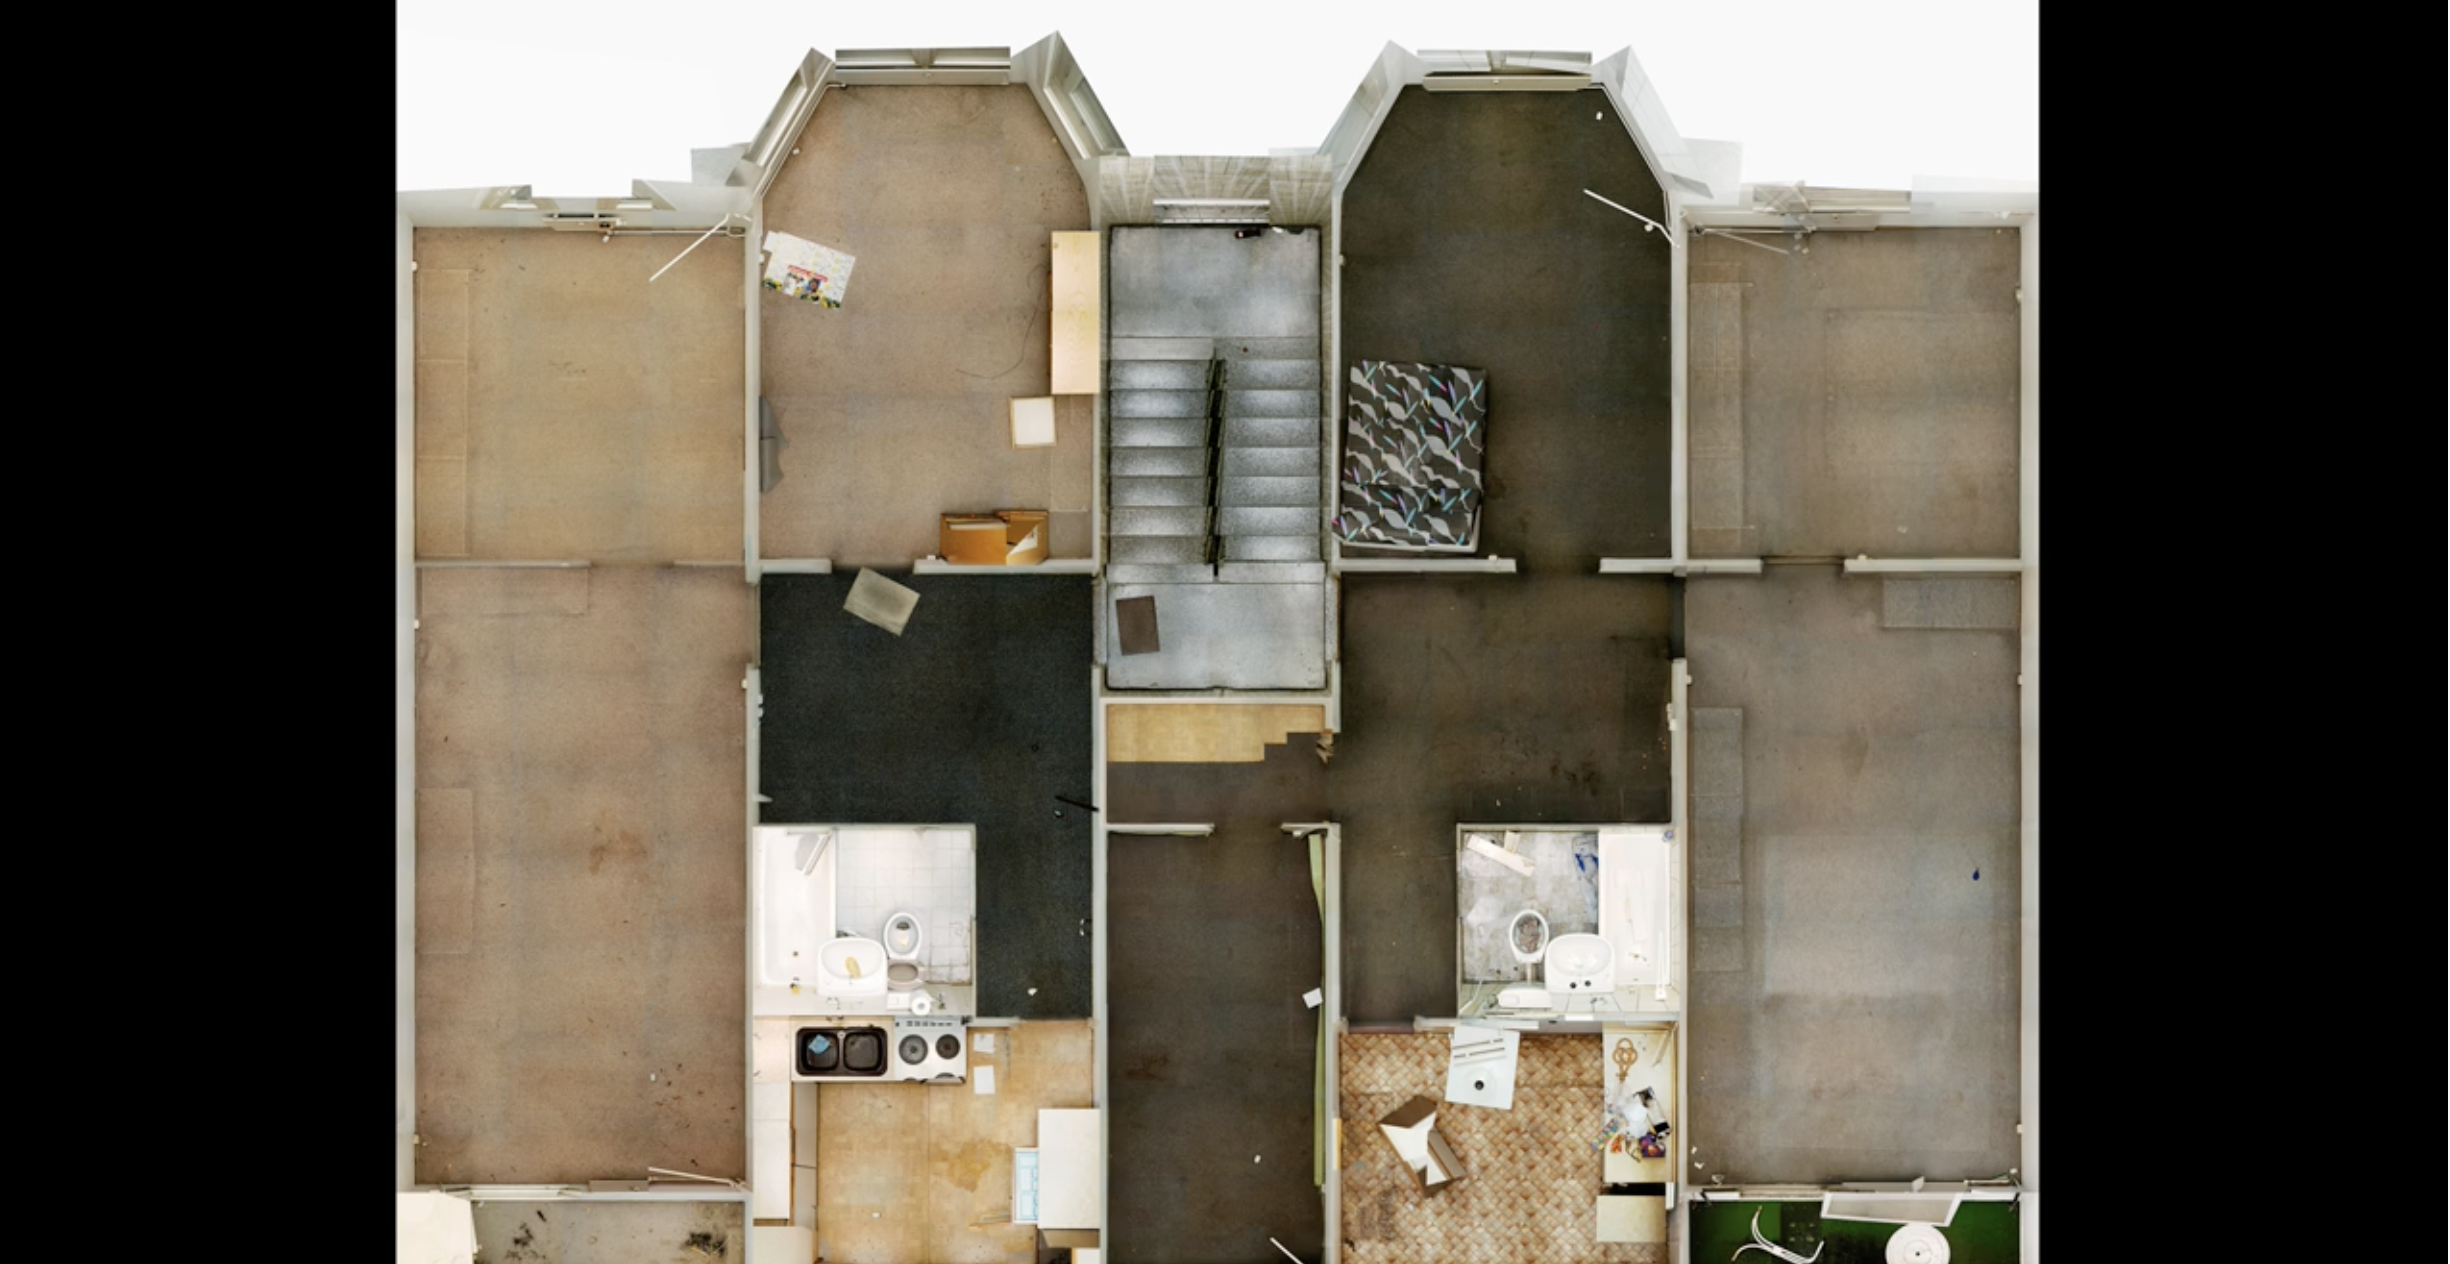 Andreas Gefeller, "Panel Buildings 1-5"